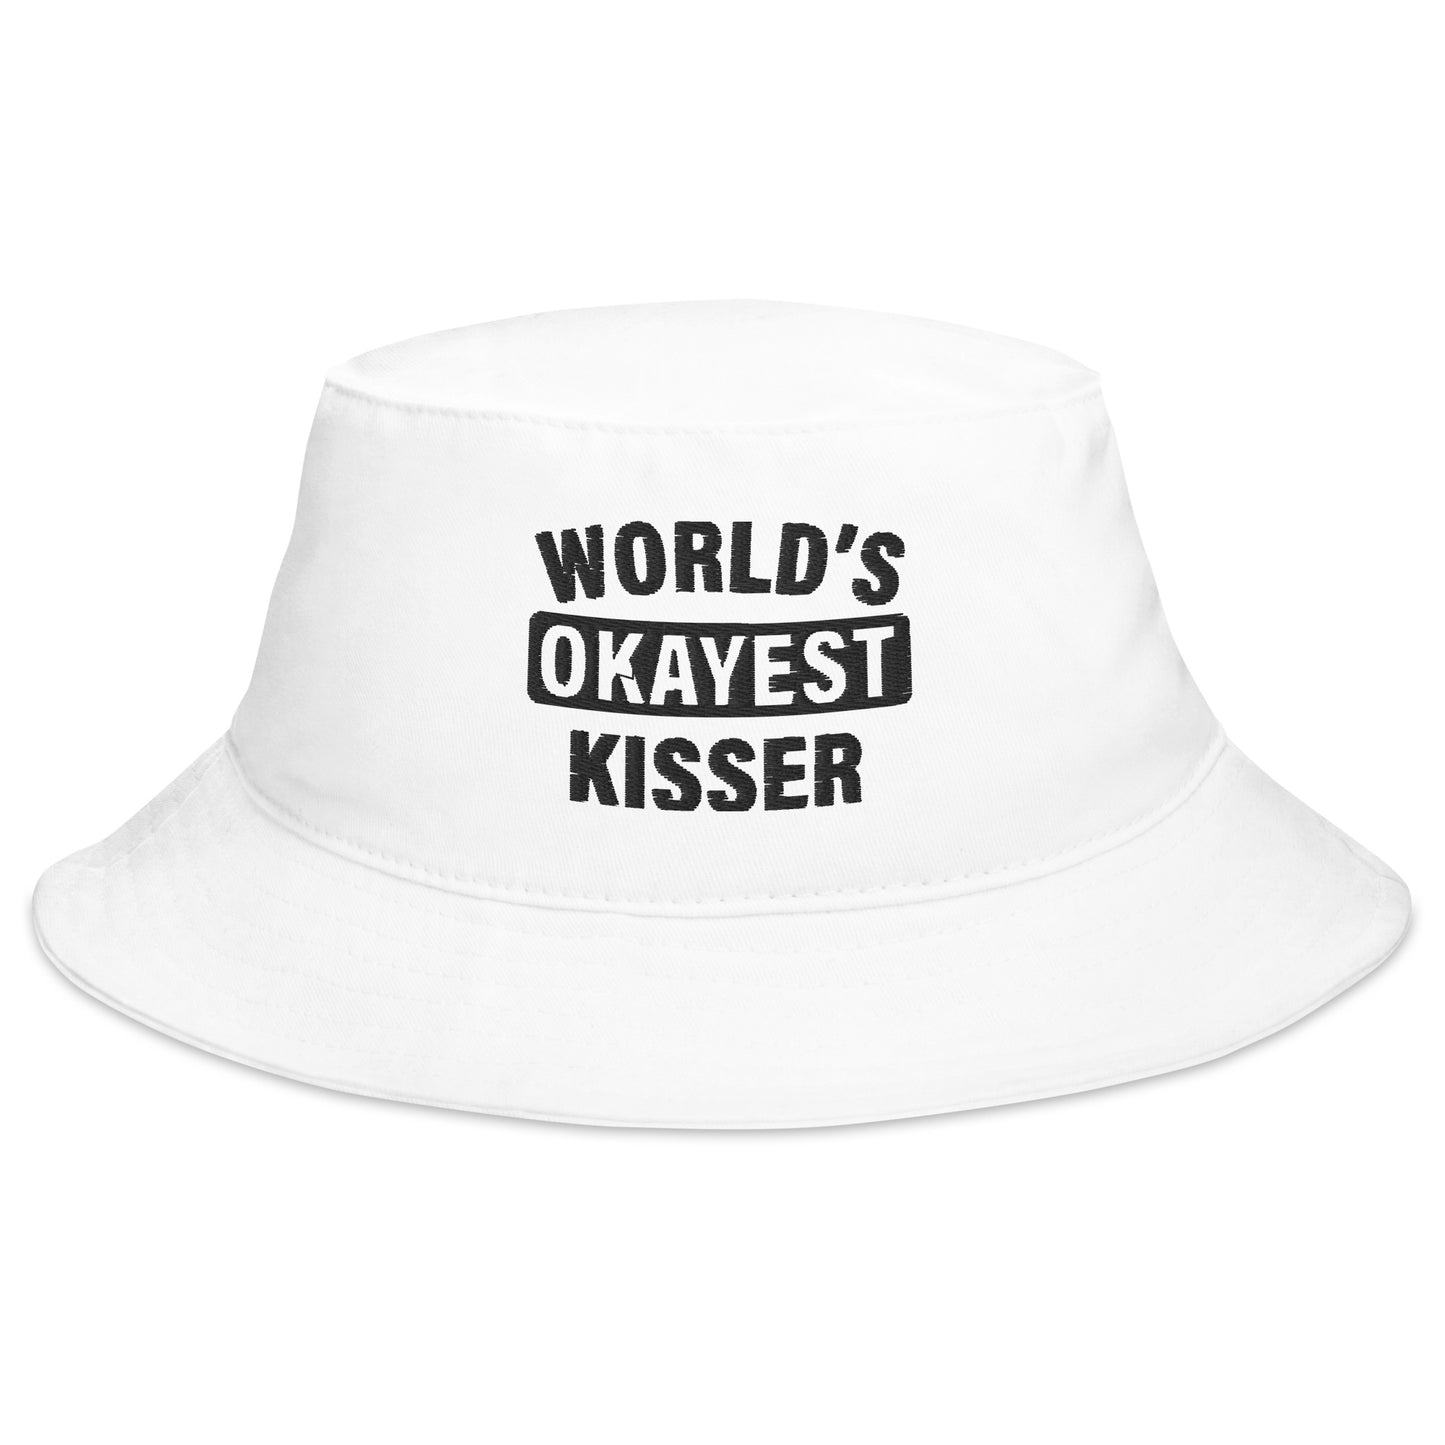 World's Okayest Kisser Bucket Hat